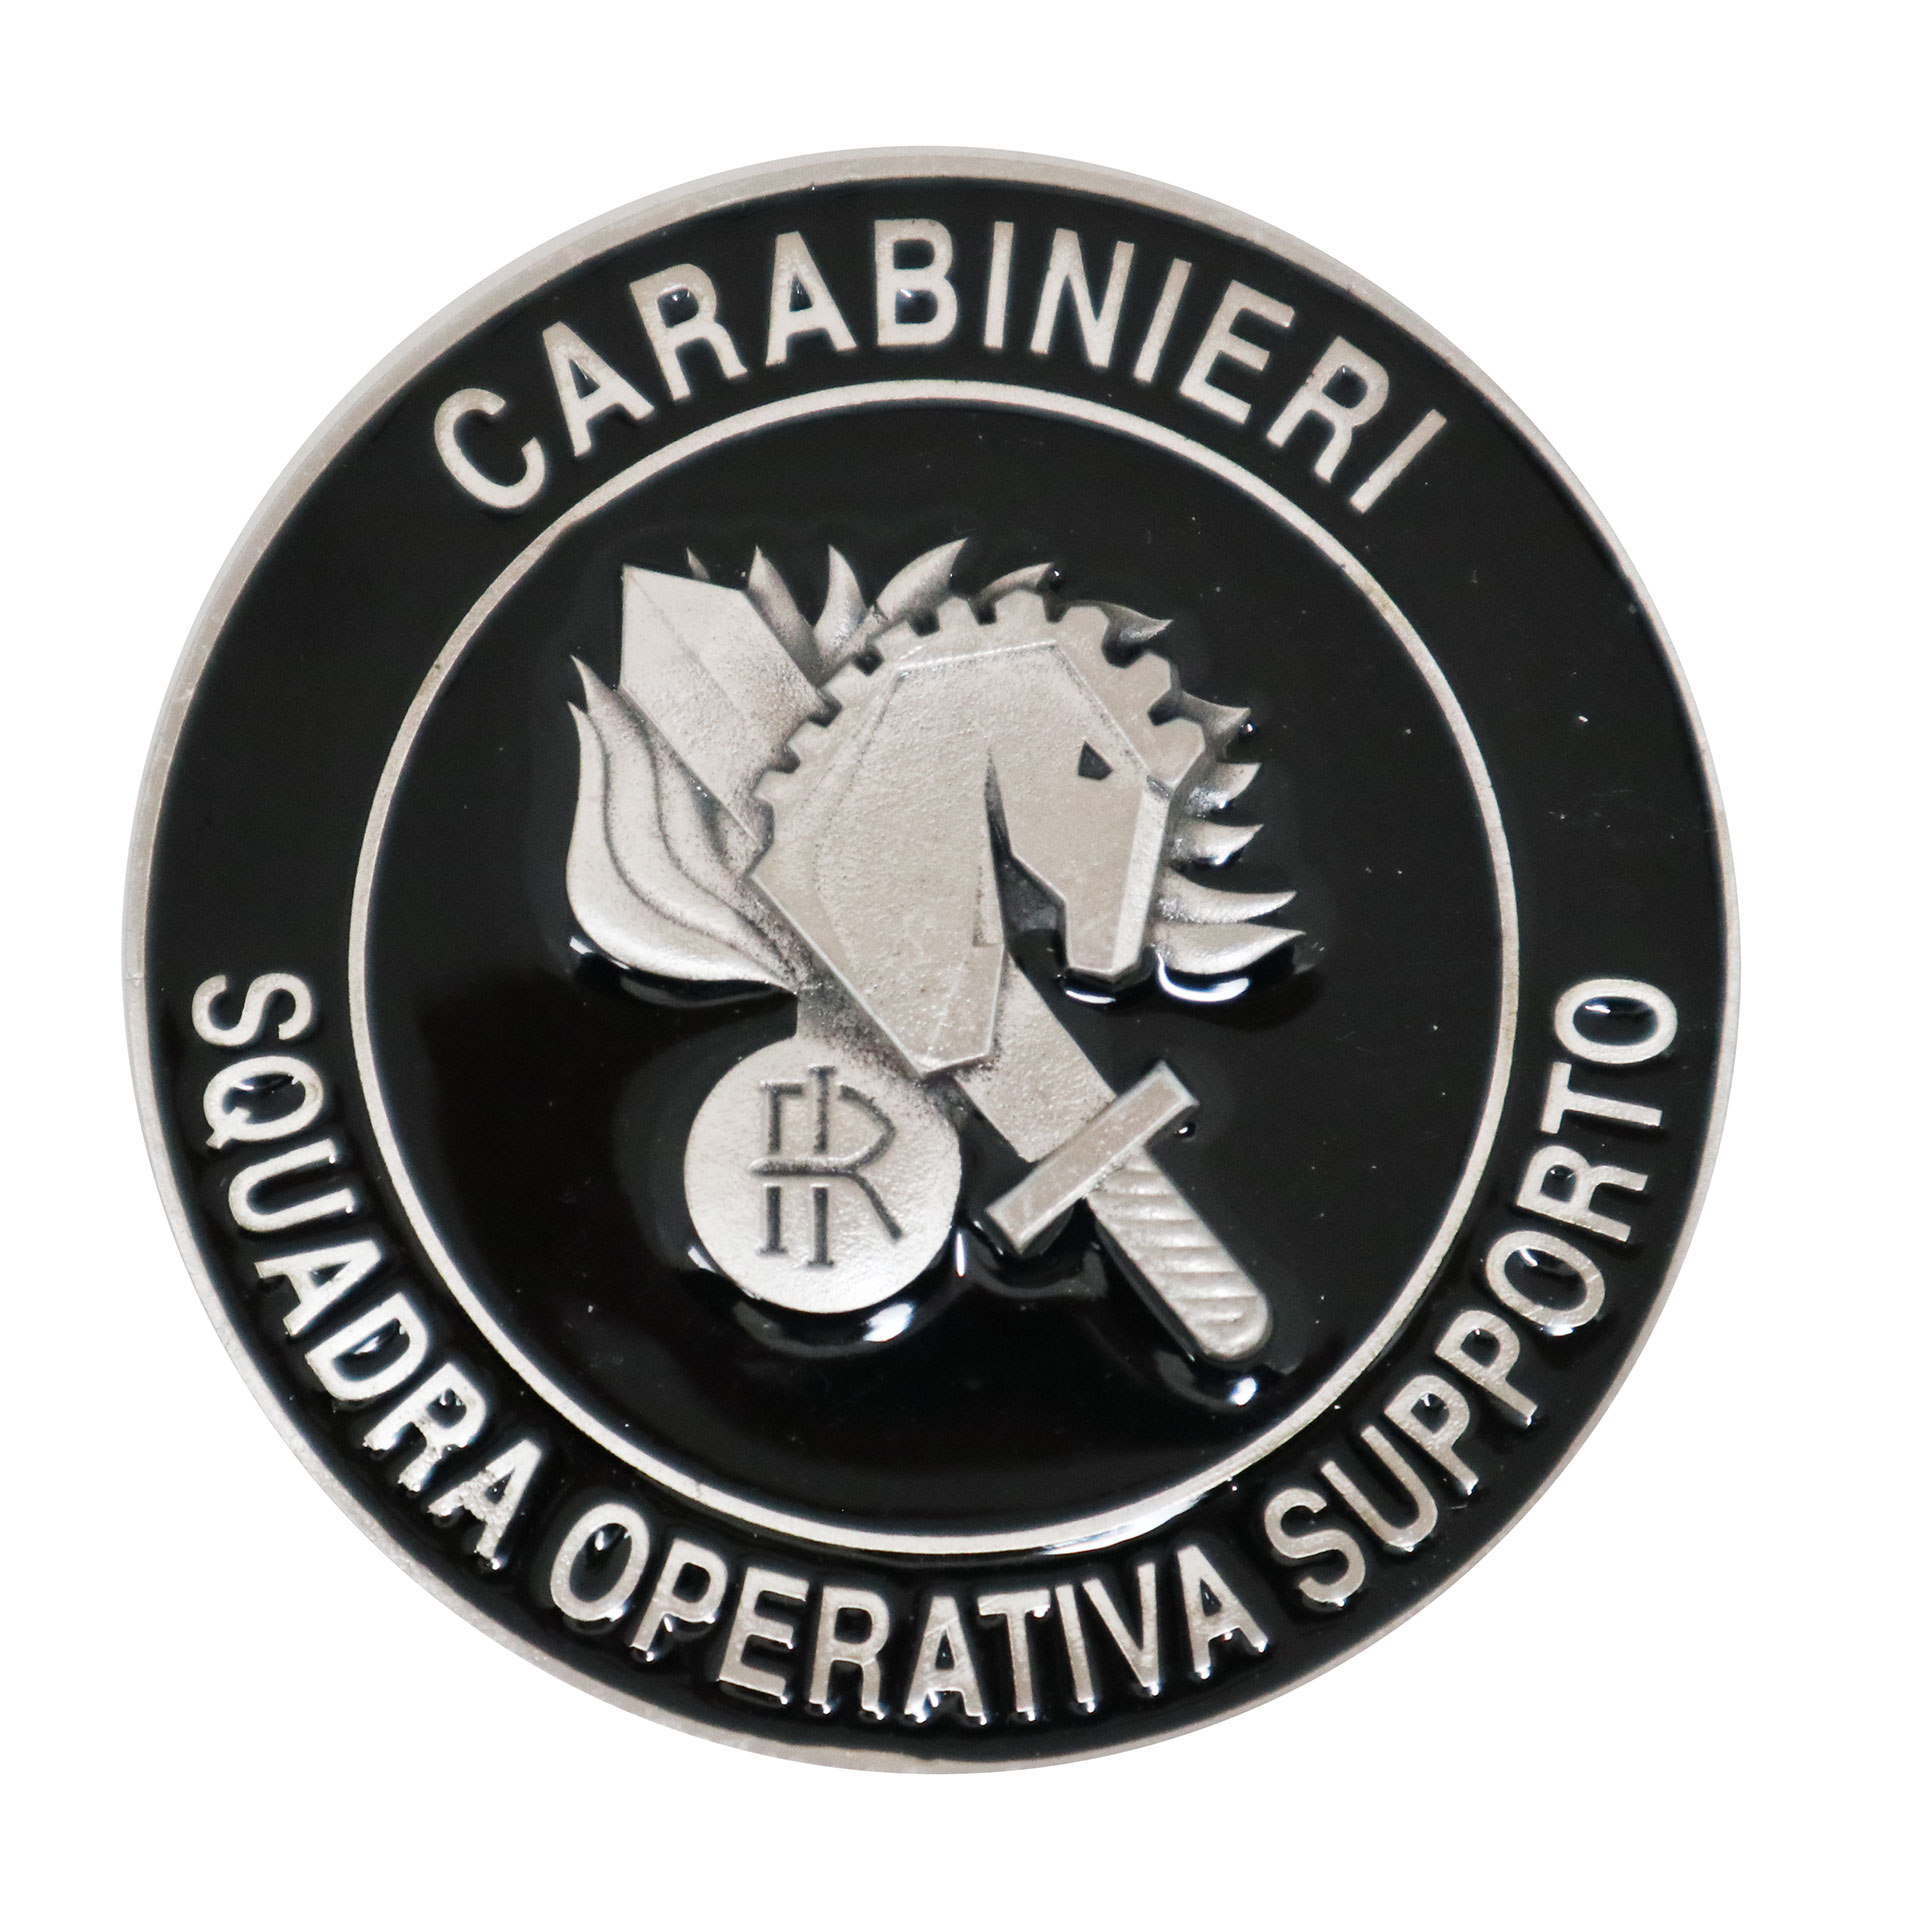 https://www.giemmearaldica.it/immagini-400/public/catalogo/prodotti/foto/big/6143_cc410sqopsu-fermacarte-in-metallo-carabinieri-squadra-operativa-di.jpg